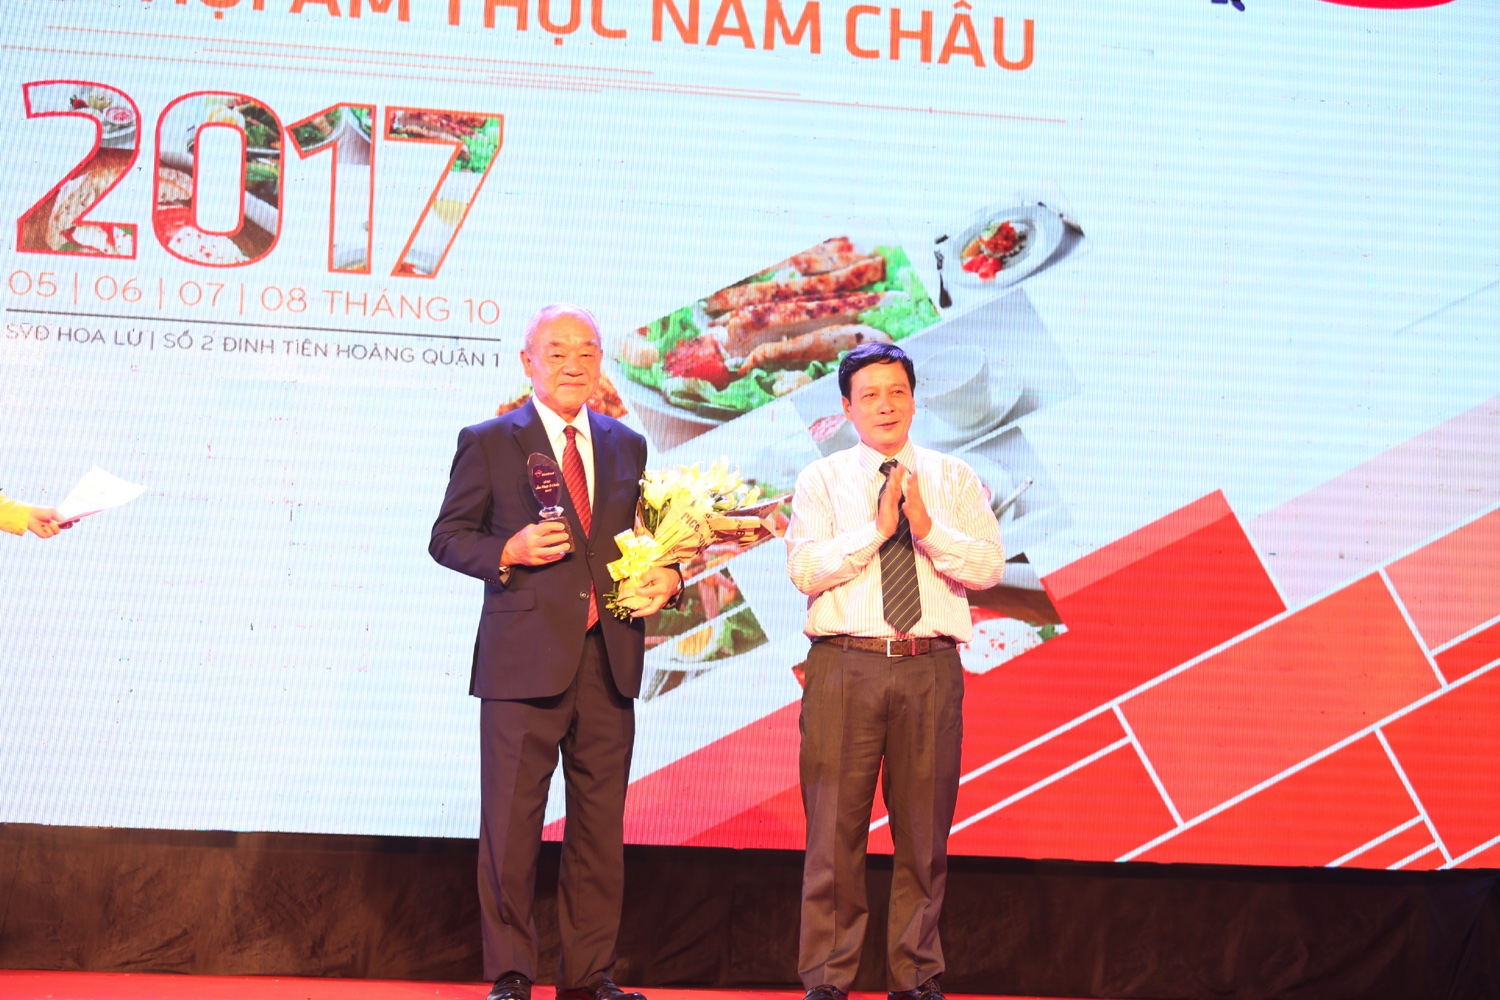 (Tổng Giám Đốc công ty Acecook Việt Nam – Mr.Kajiwara nhận hoa và cúp lưu niệm từ Ban tổ chức)